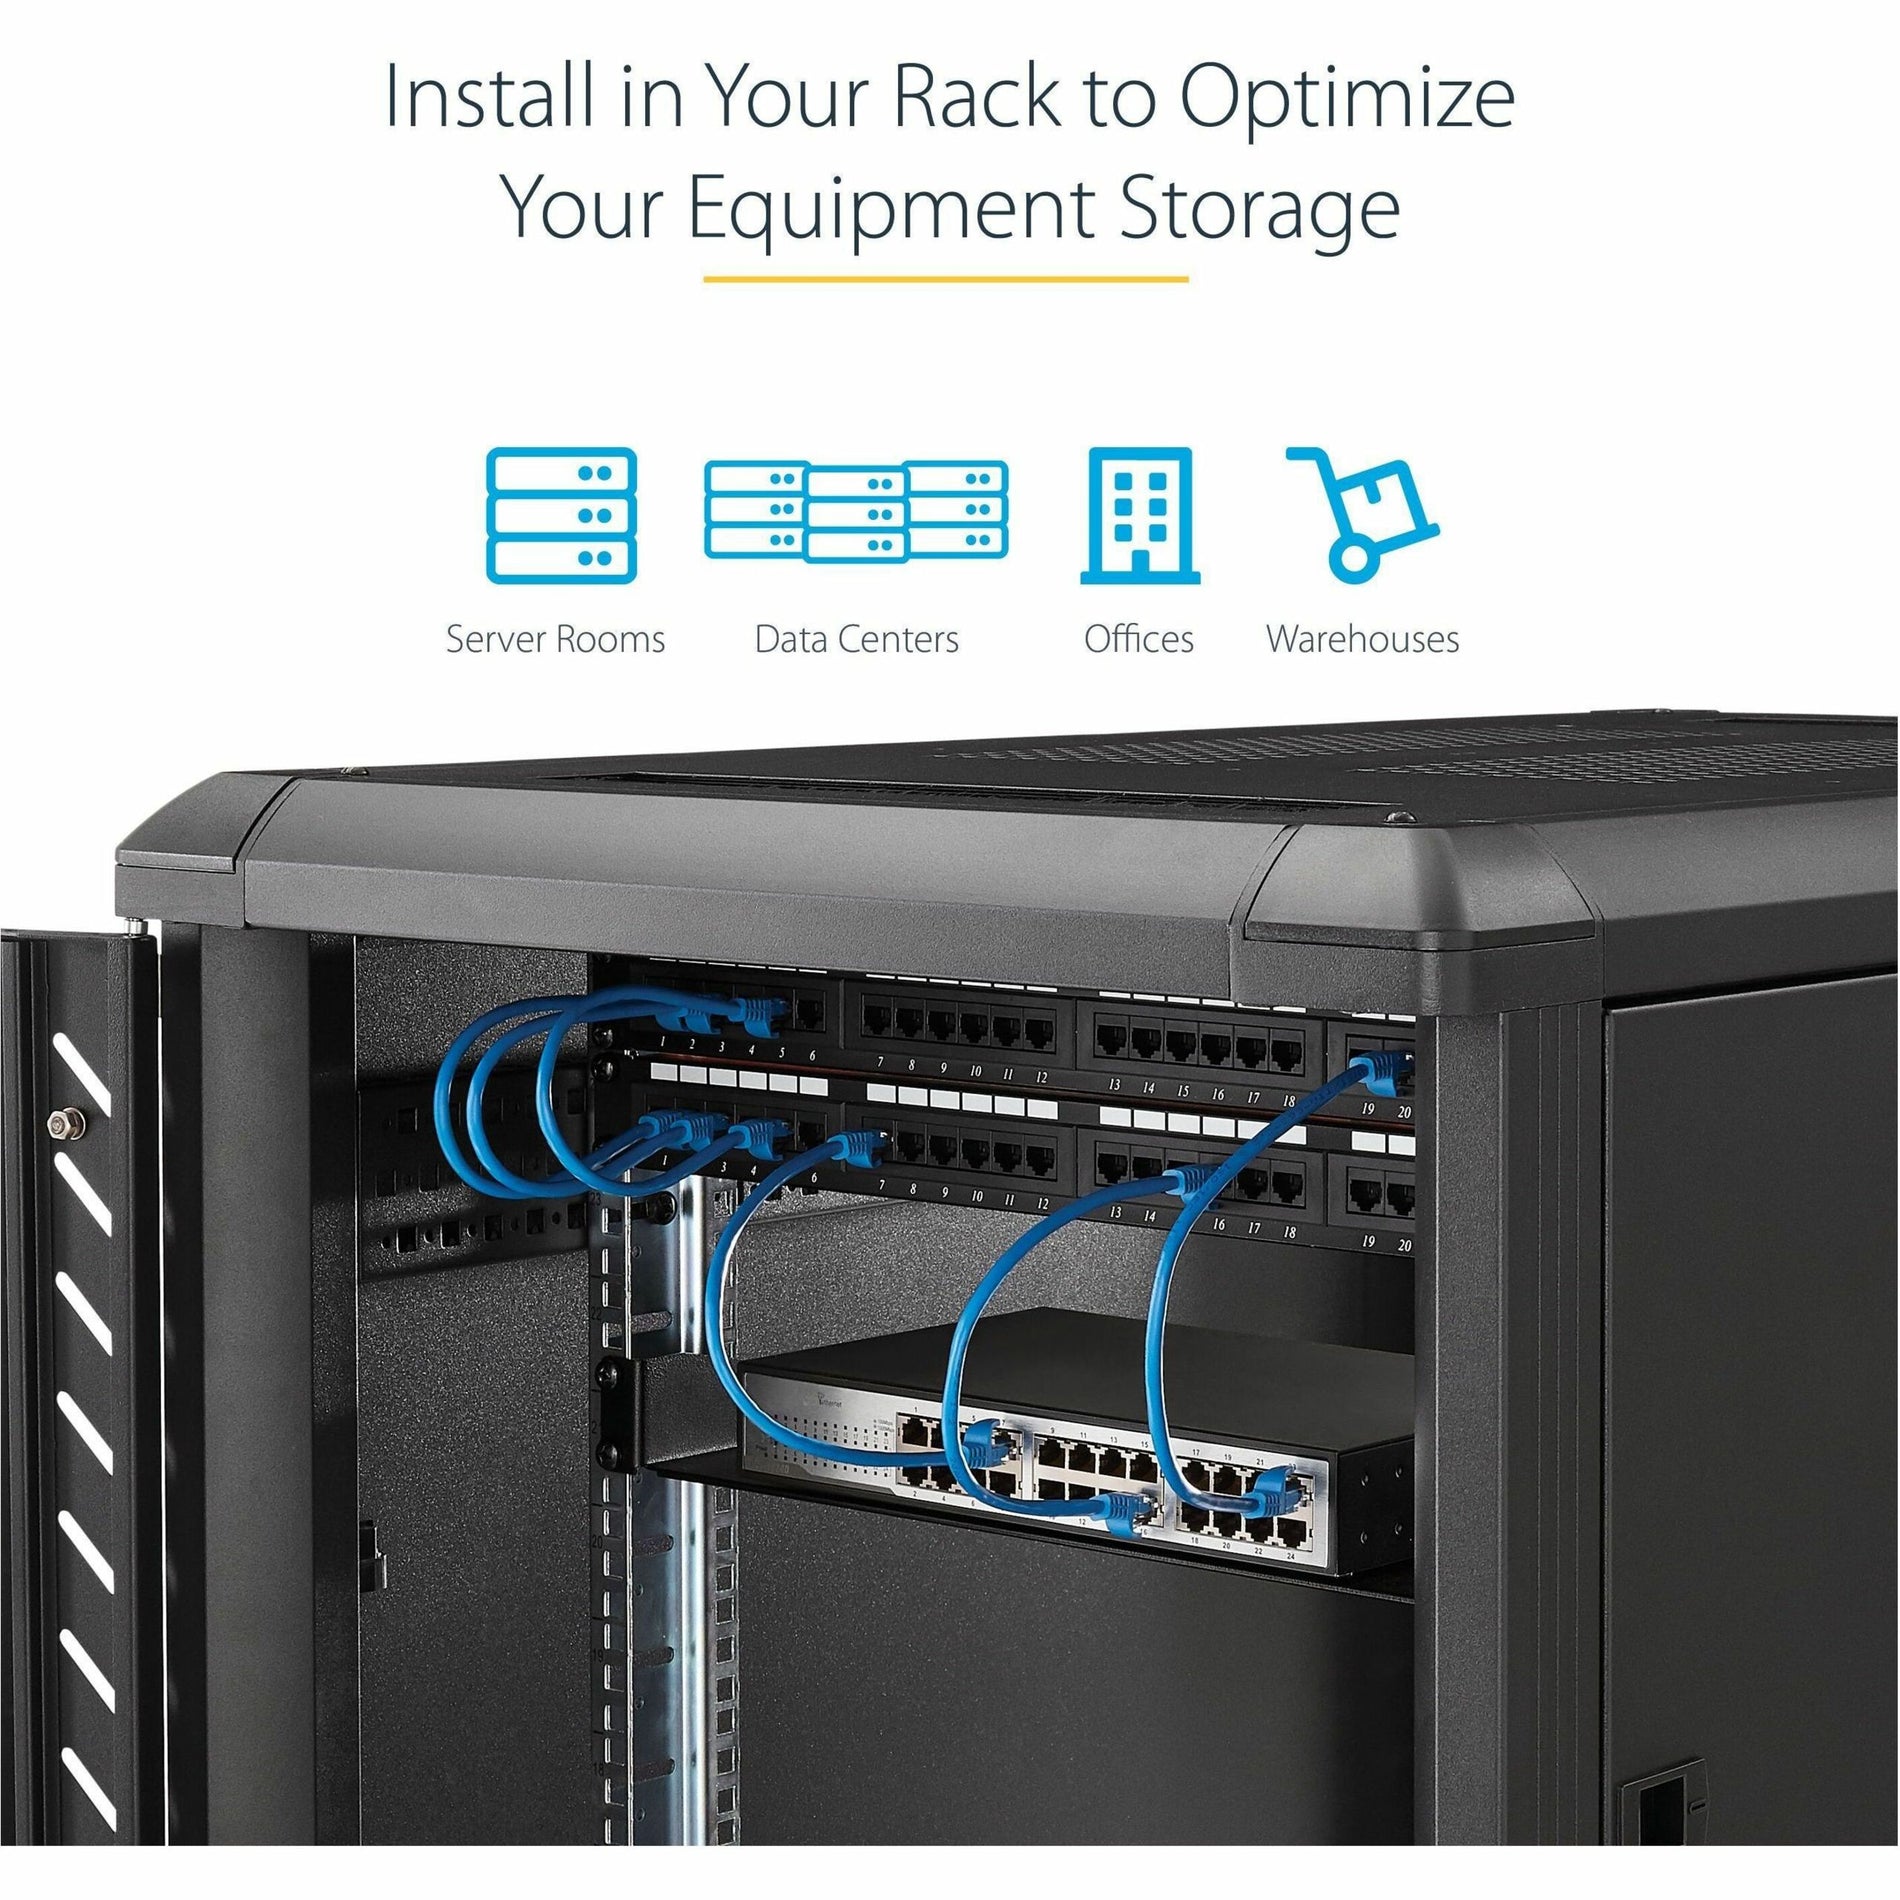 StarTech.com CABSHELF Black Standard Universal Server Rack Cabinet Shelf, Cable Management